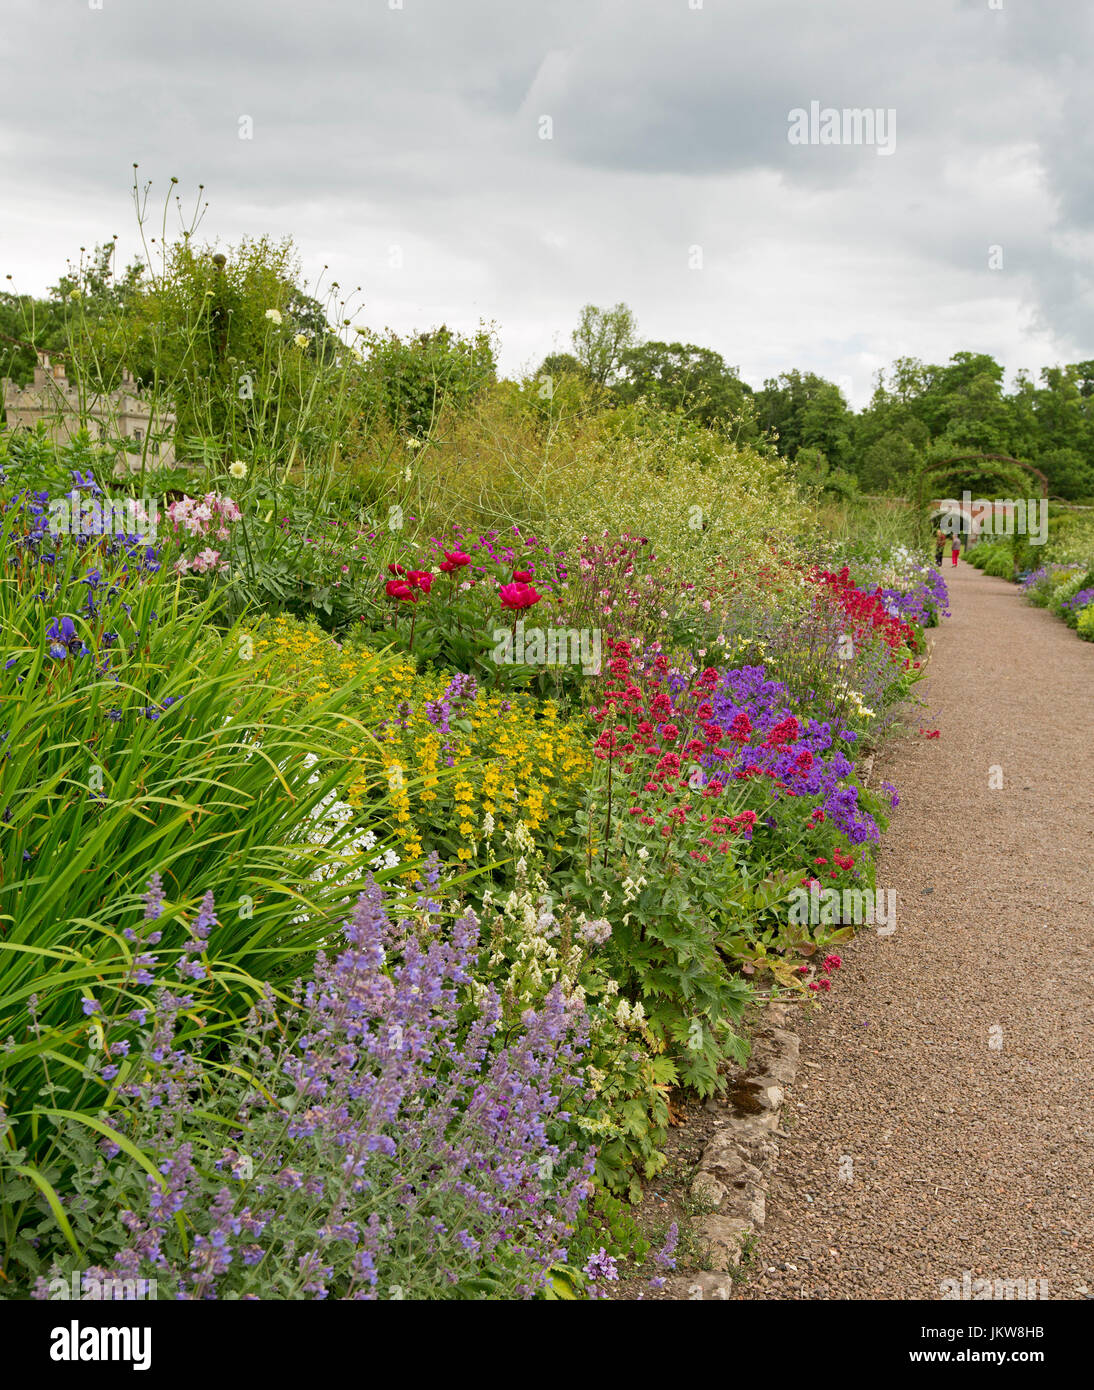 Bunten englischen Cottage-Garten mit Weg führt vorbei an krautigen Grenze mit Massen von rot, weiß, gelb und lila Blumen und grünen Laub. Stockfoto